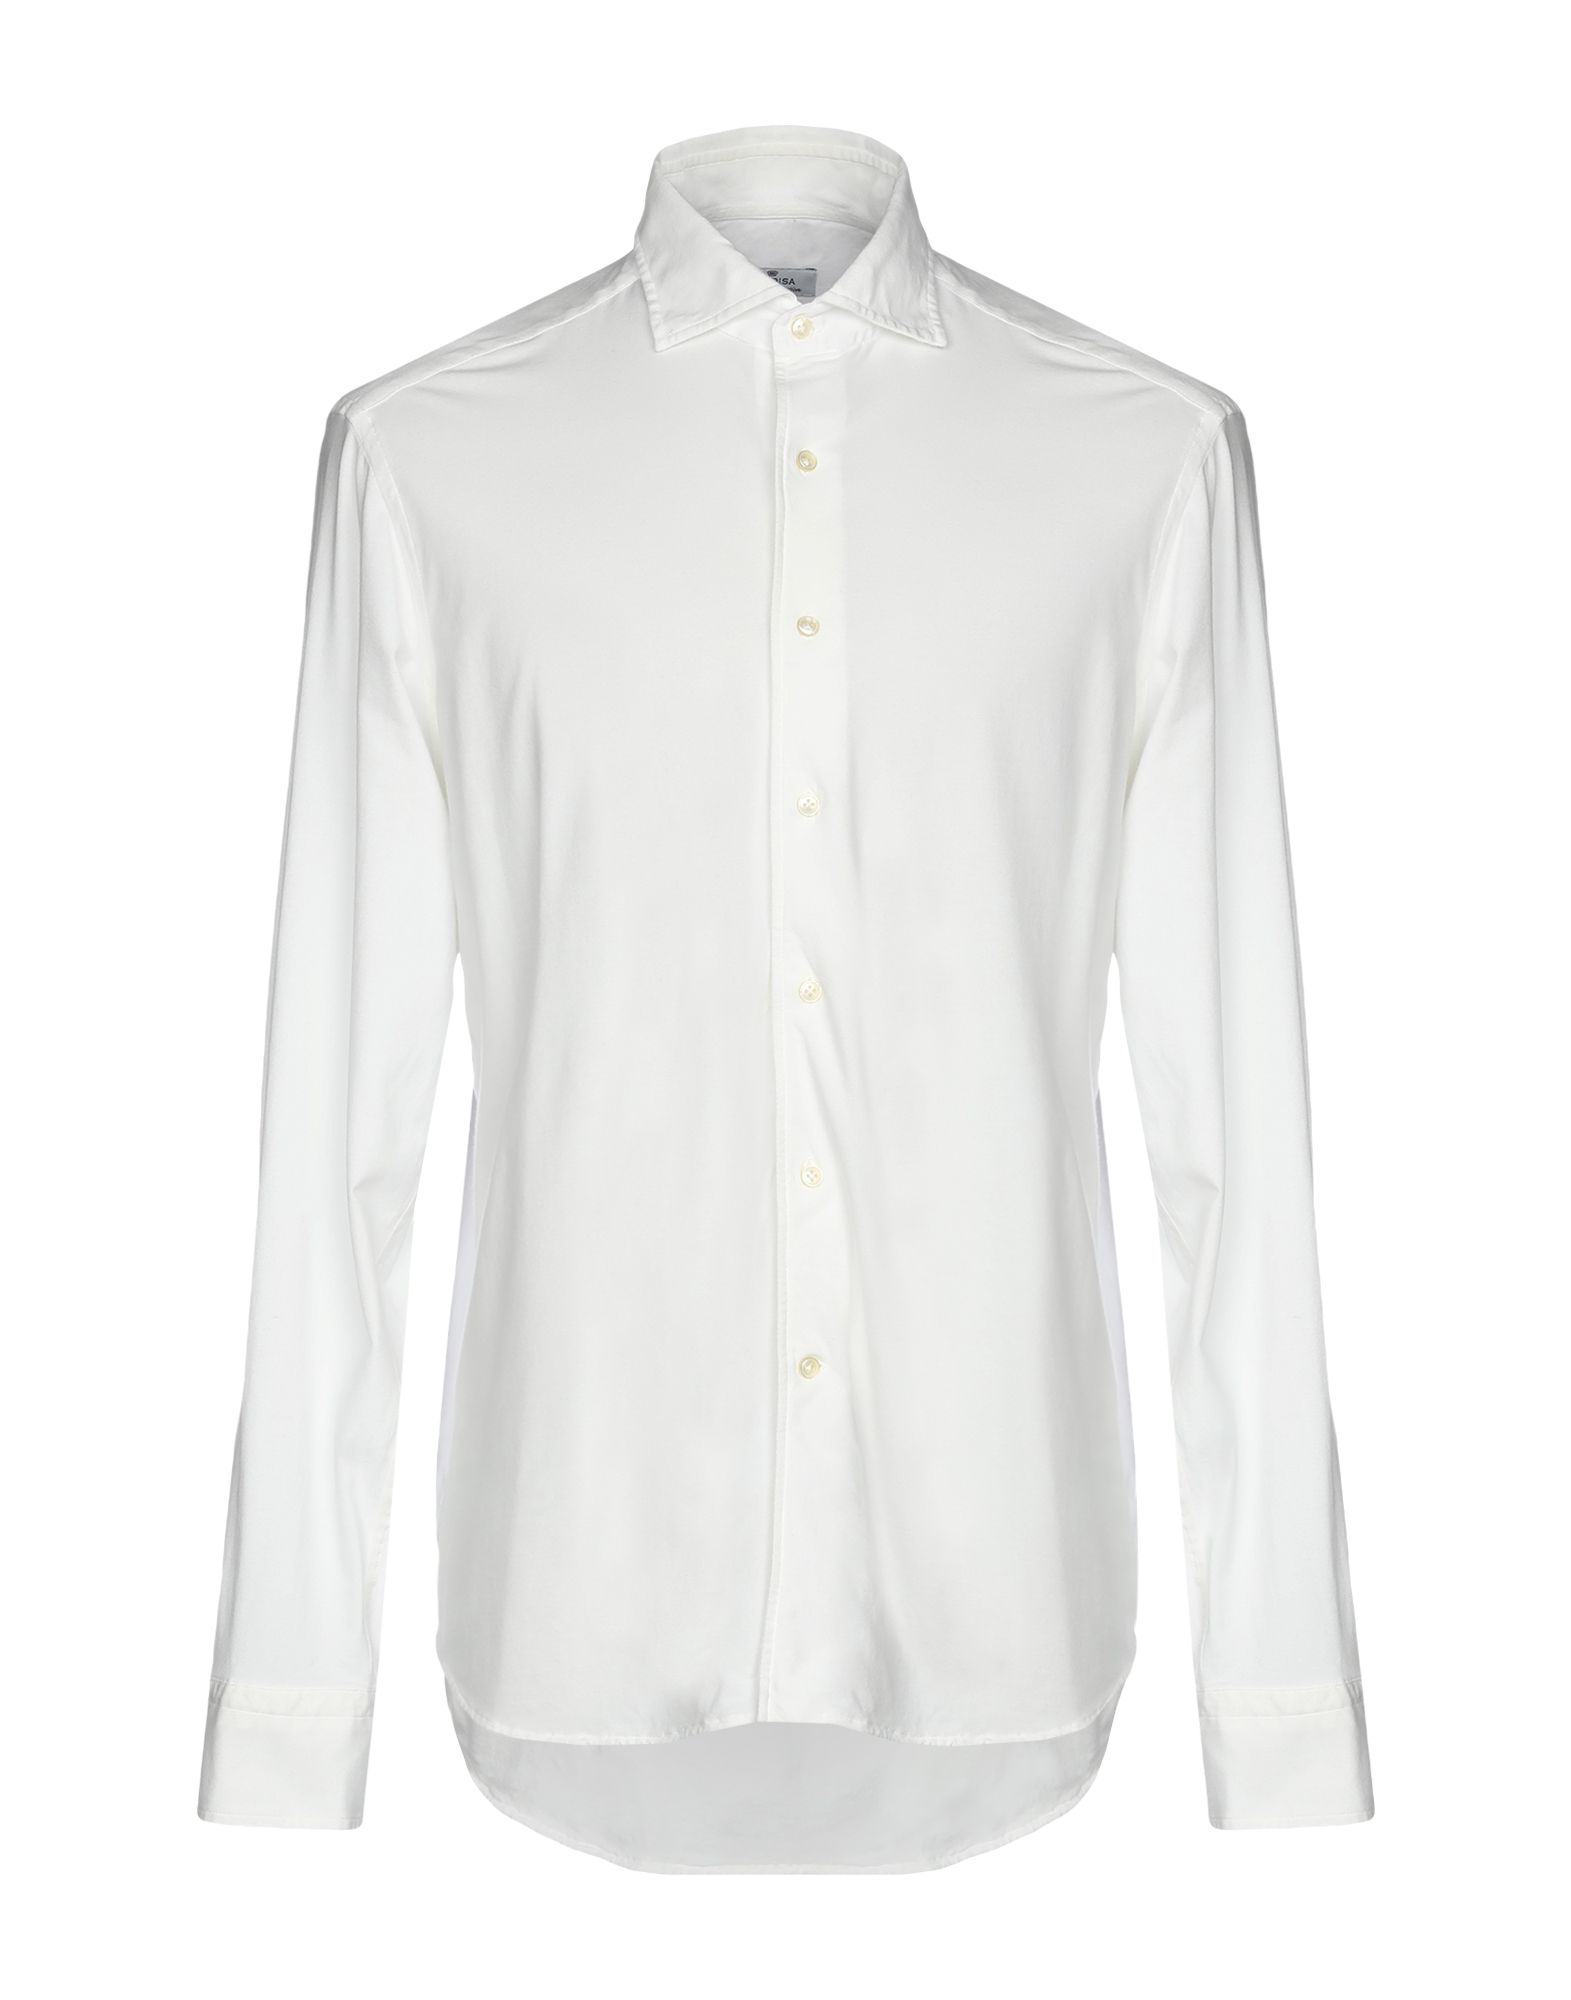 Sonrisa Shirts In White